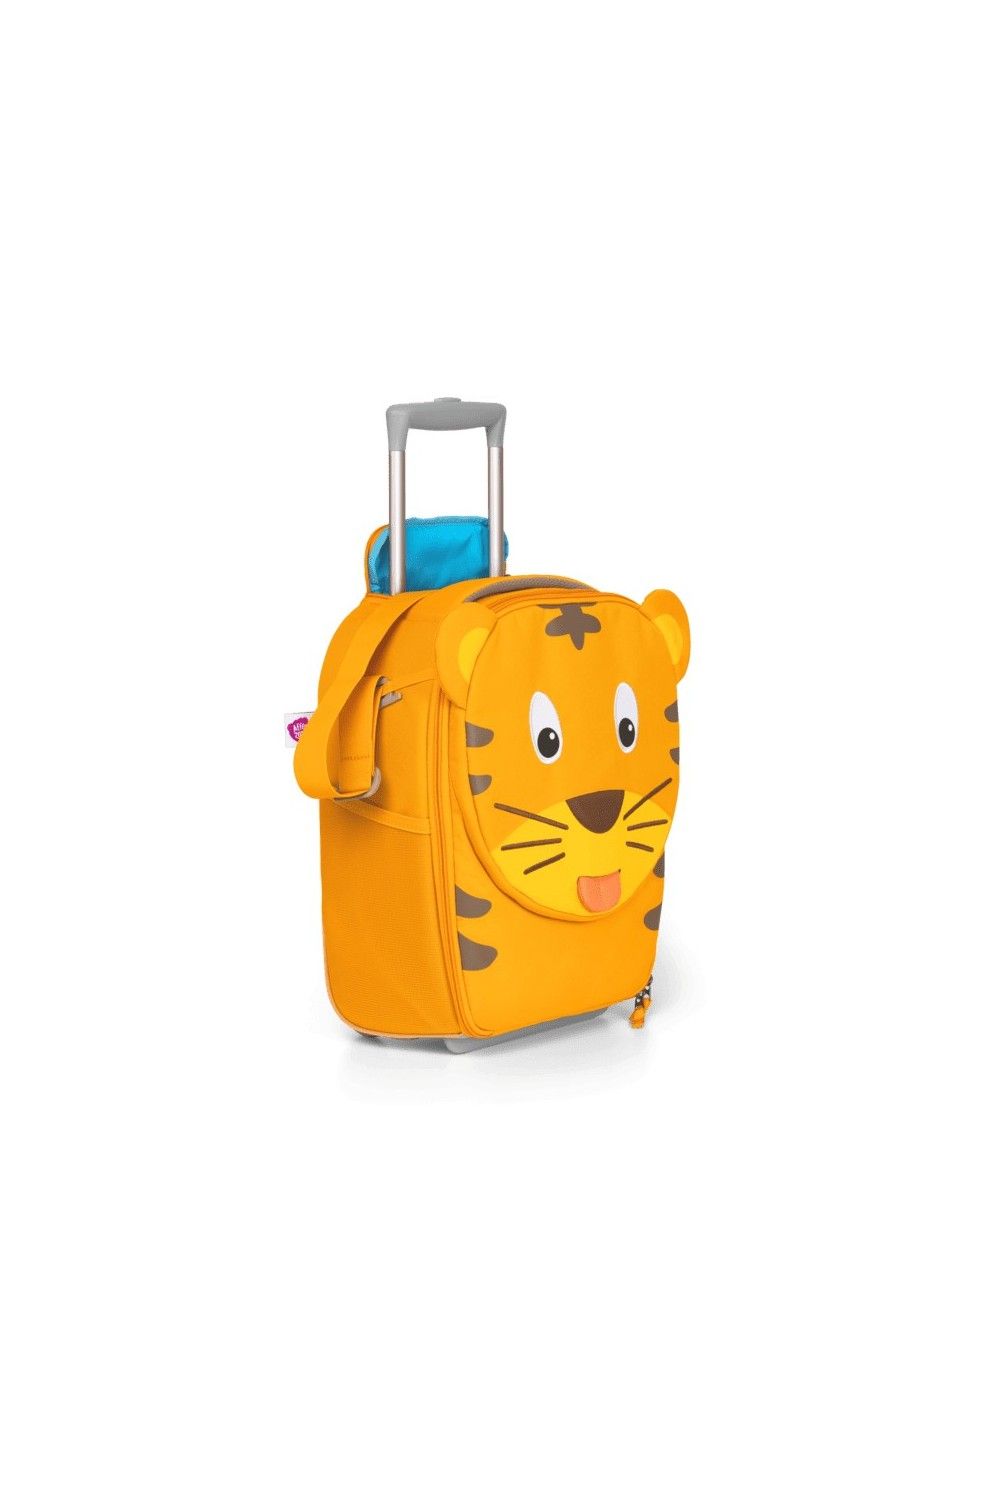 Affenzahn children's suitcase Tiger 40cm 2 wheel